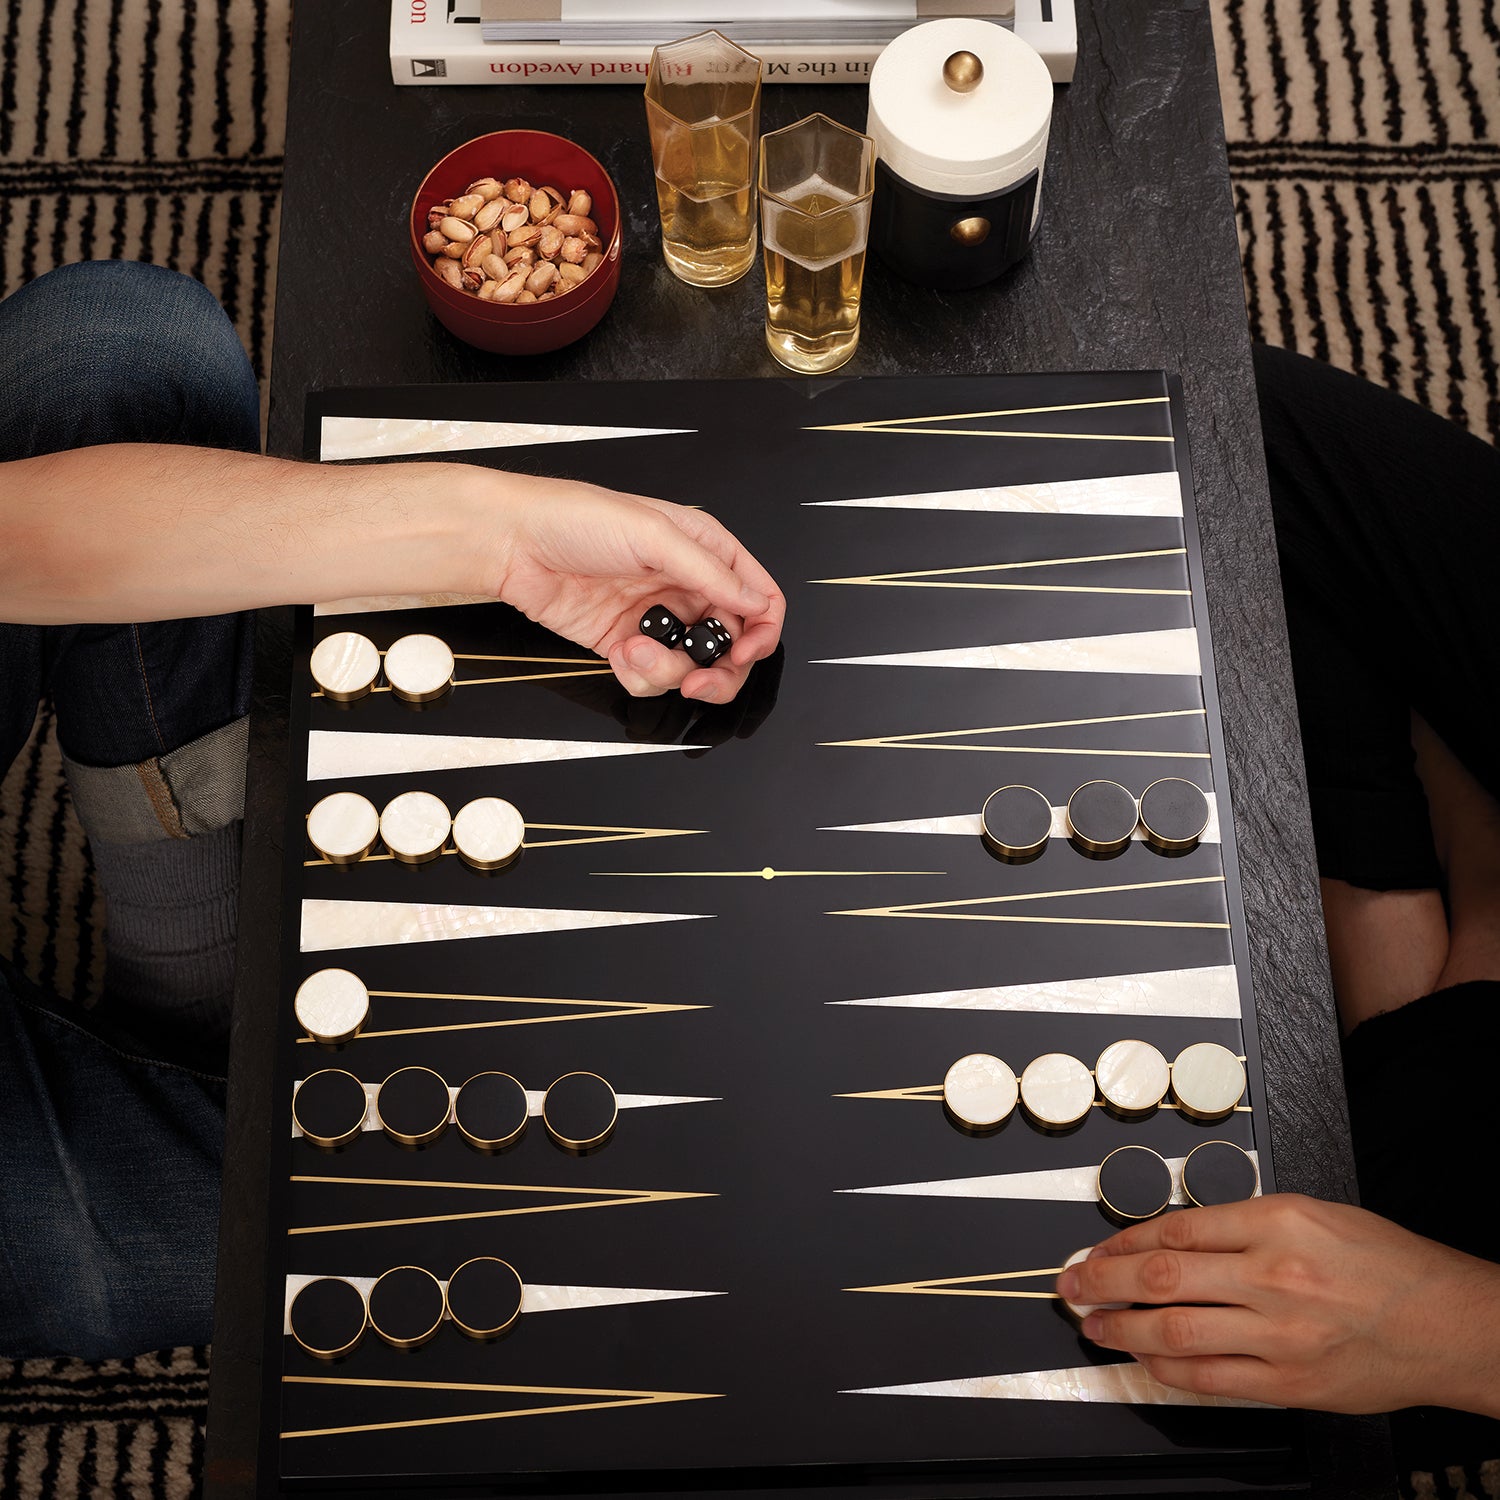 L'Objet Backgammon - RSVP Style